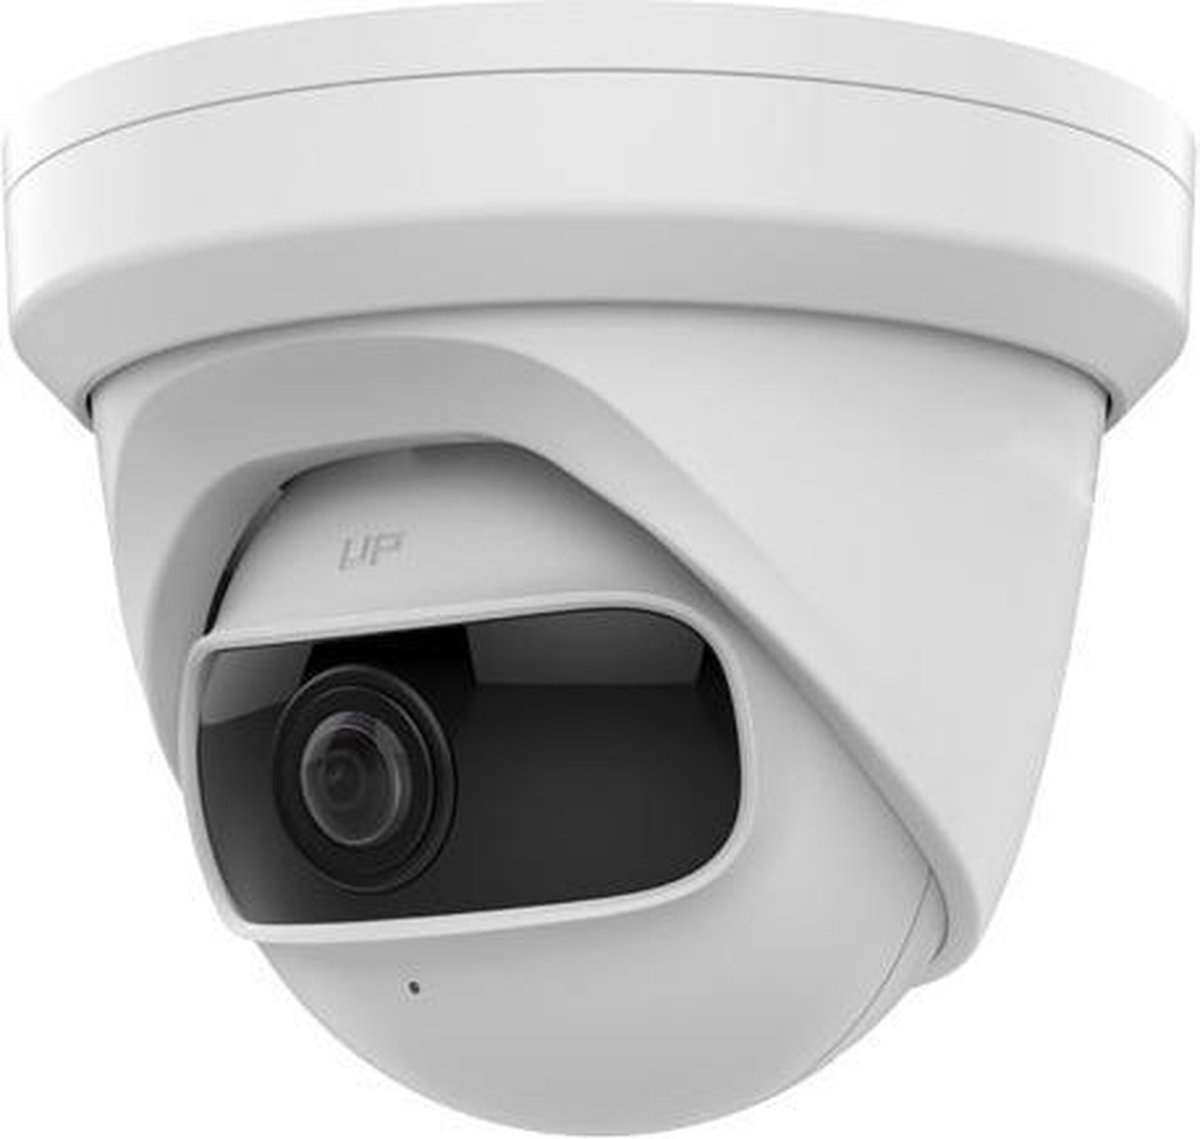 Safire SF-IPT180UWH-4U-WIDE Full HD 4MP binnen turret met 180 graden beeldhoek, IR, PoE en microSD slot - Beveiligingscamera IP camera bewakingscamera camerabewaking veiligheidscamera beveiliging netwerk camera webcam